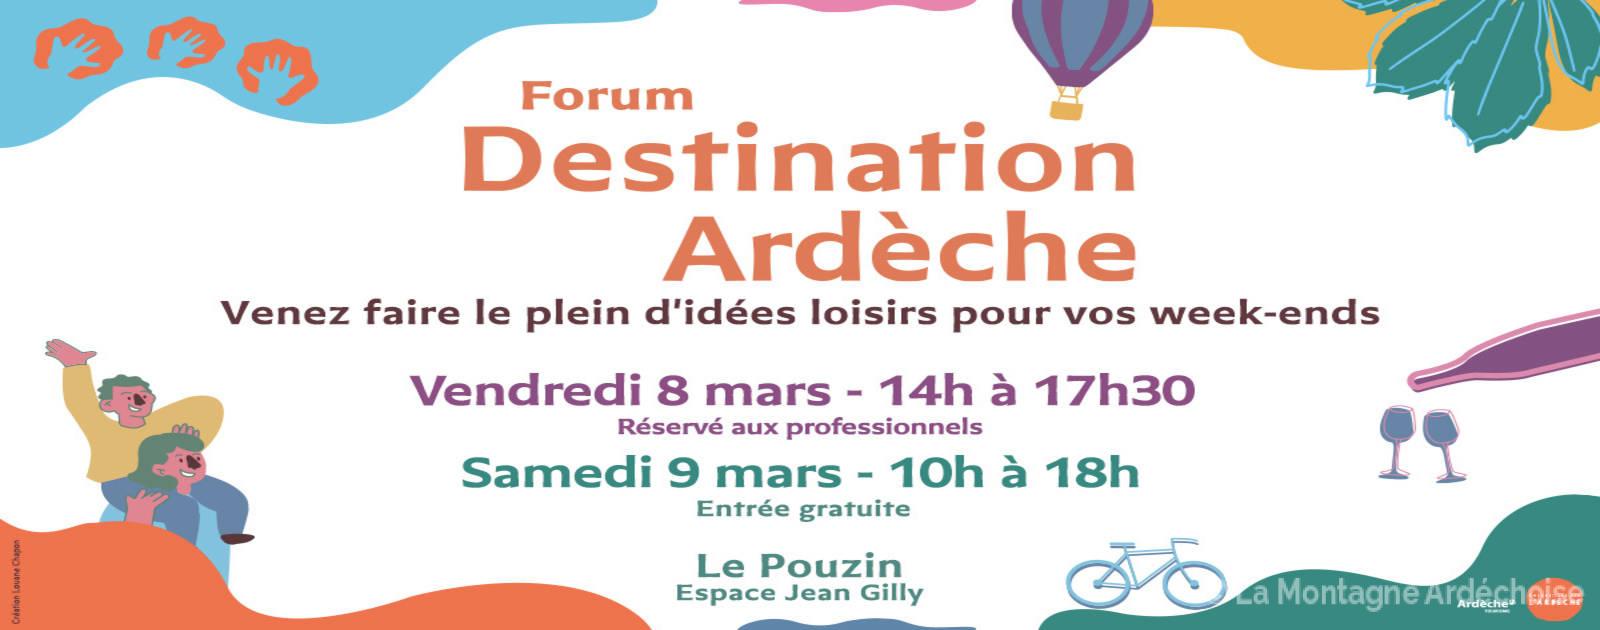 Salon Destination Ardèche